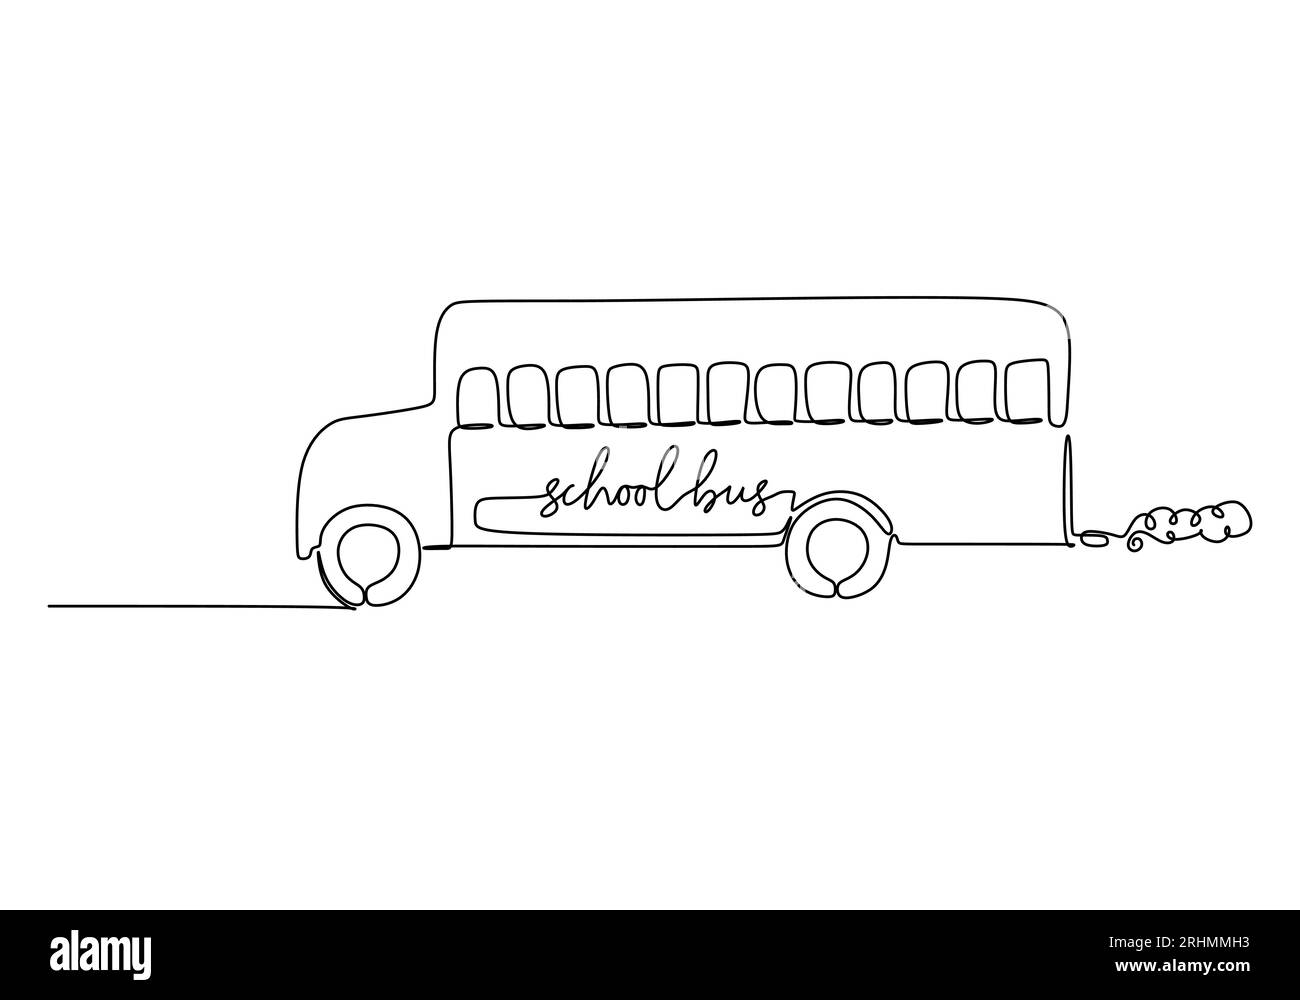 Schulbus - Schulbildungsobjekt, einzeilige Zeichnung kontinuierliches Design, Vektorillustration. Stock Vektor